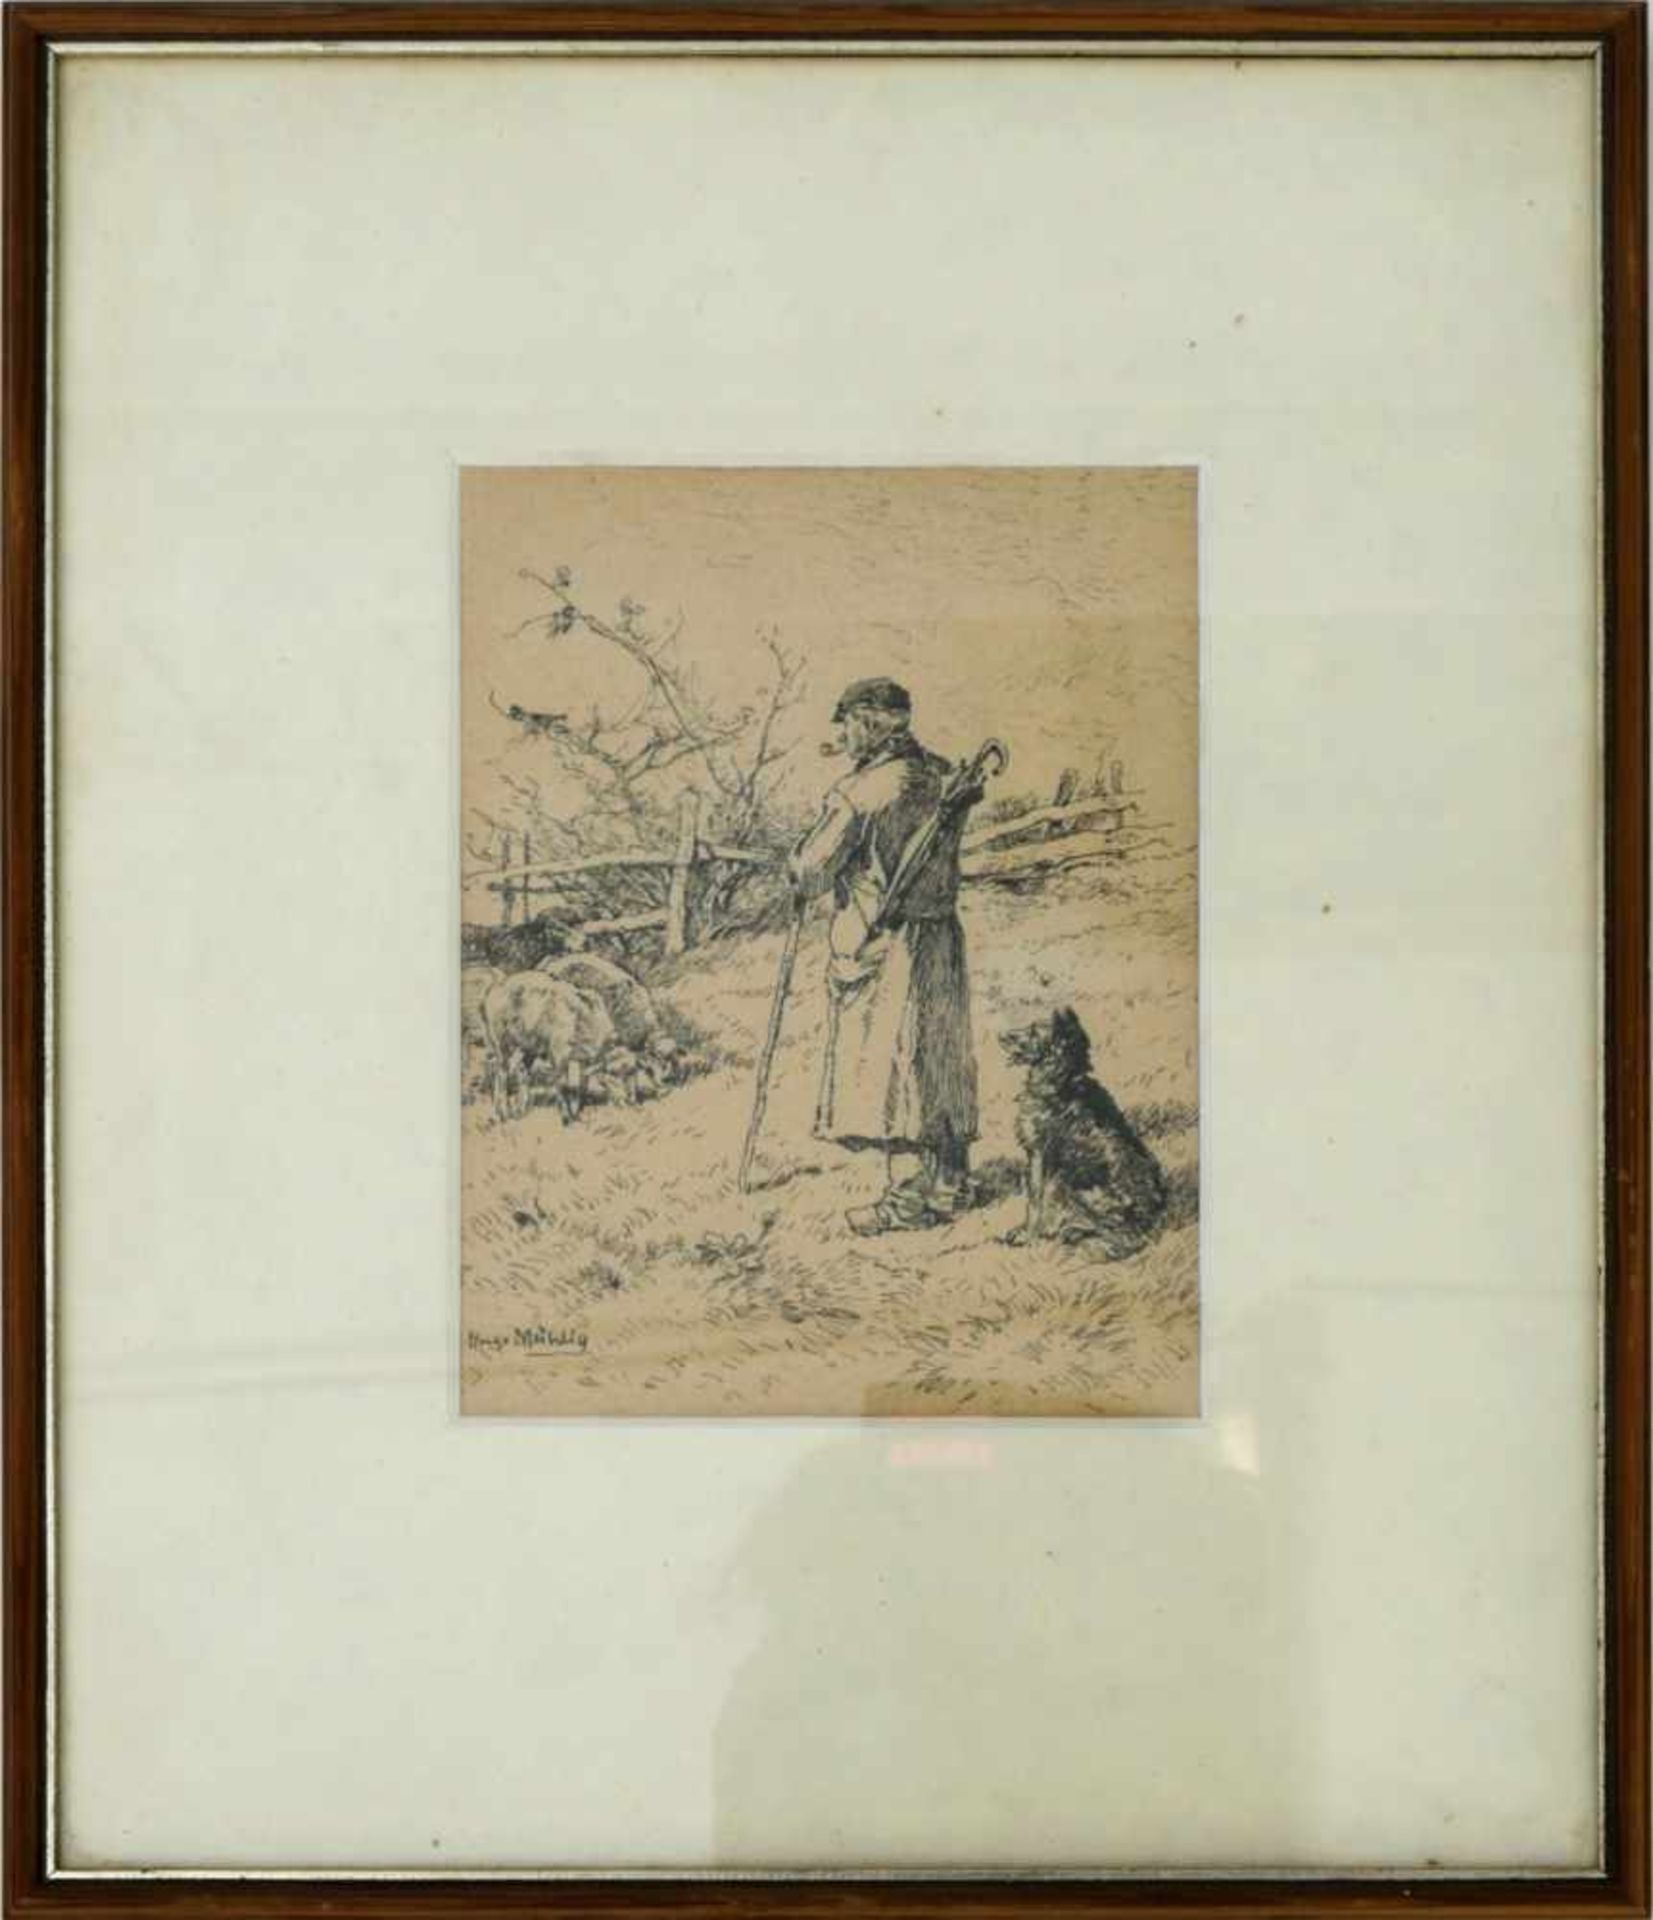 Mühlig, Hugo (1854-1929) - Tuschezeichnung HirteAuf gebräuntem Papier in feinem Strich gefertigte